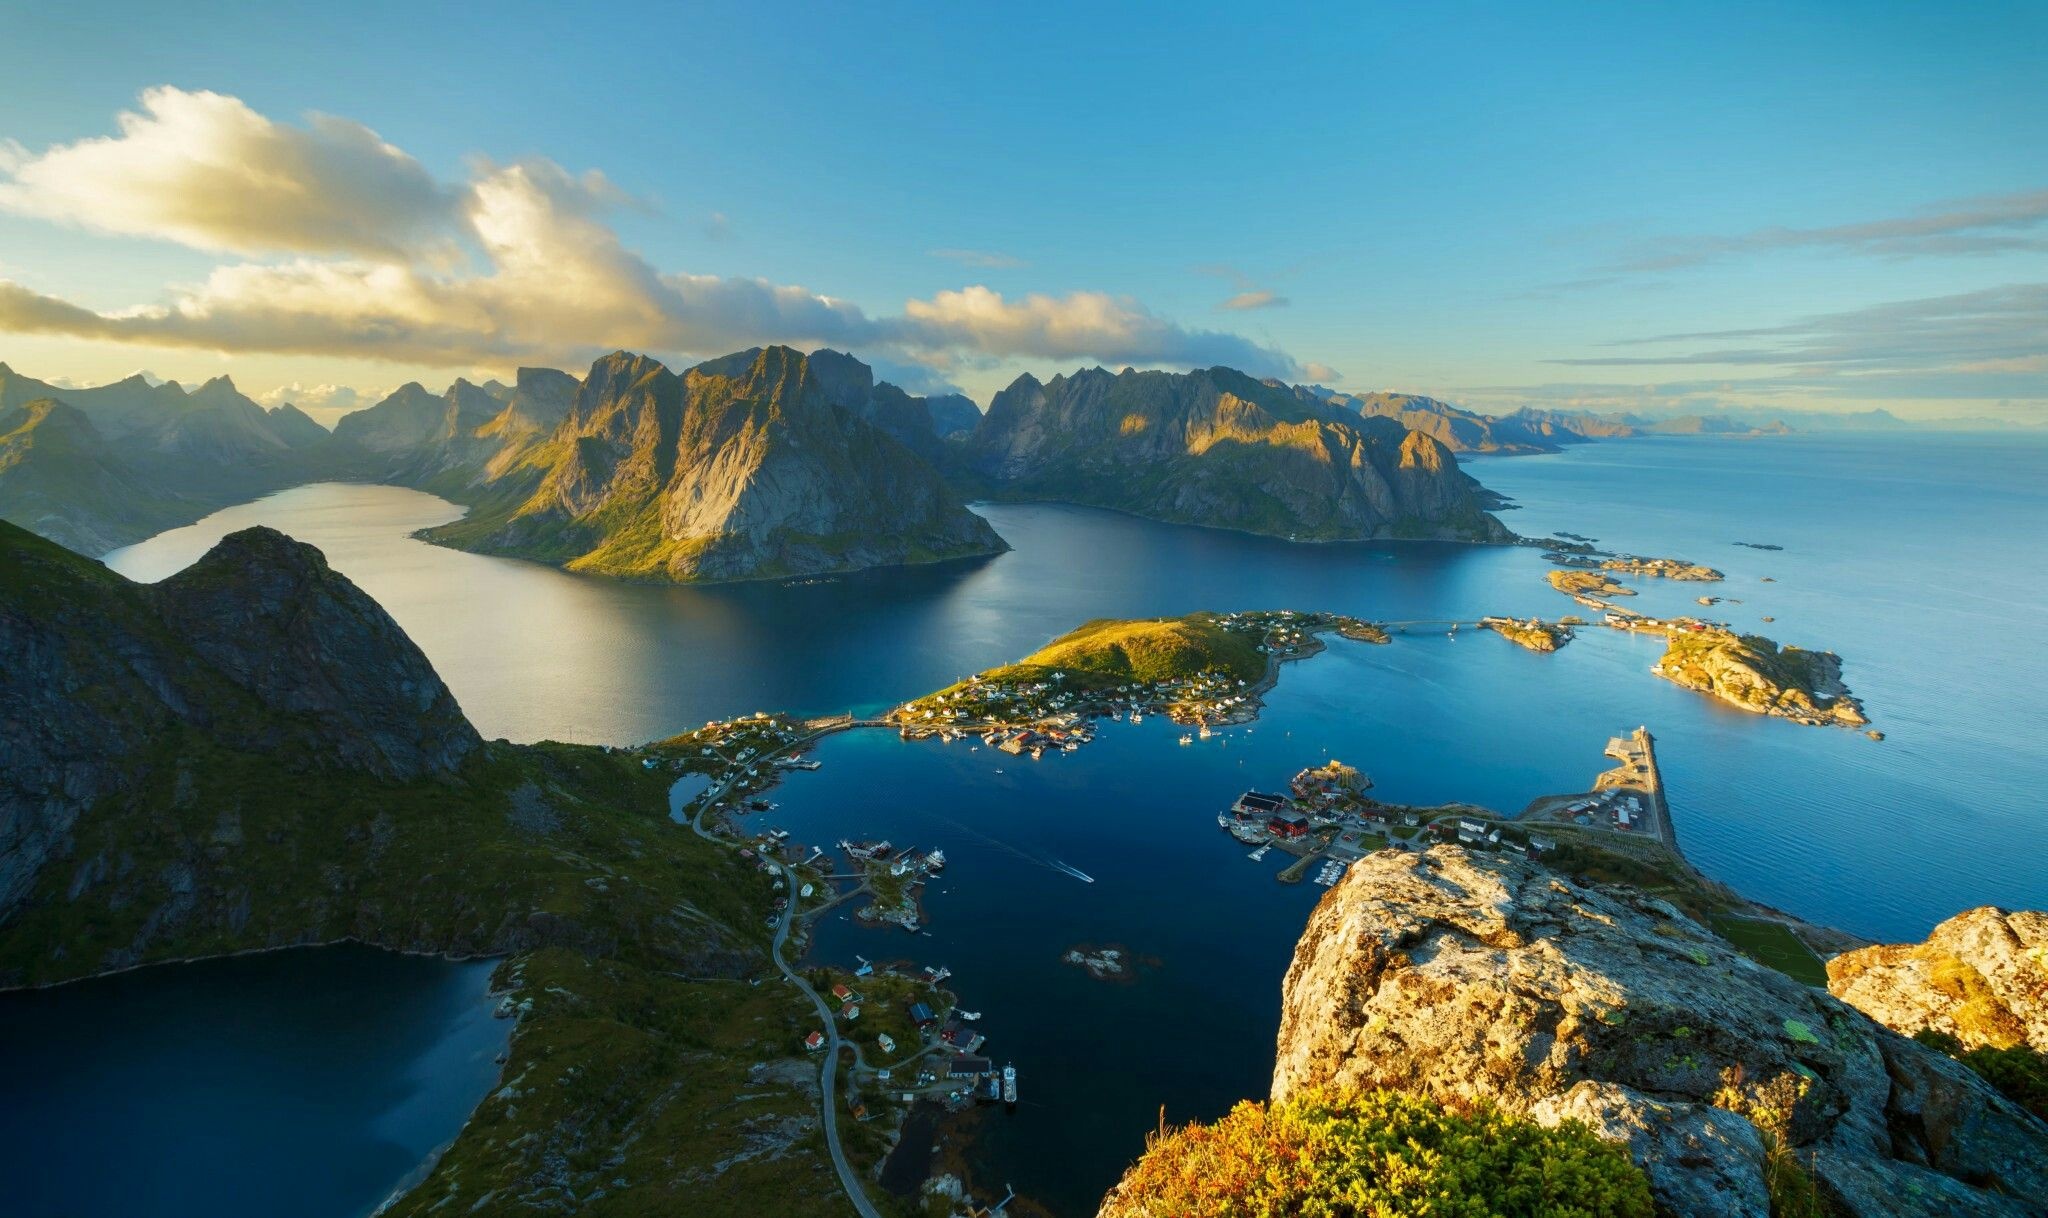 Norwegian Fjords, Norge inspiration, Lofoten Islands, Norway's natural beauty, 2050x1220 HD Desktop